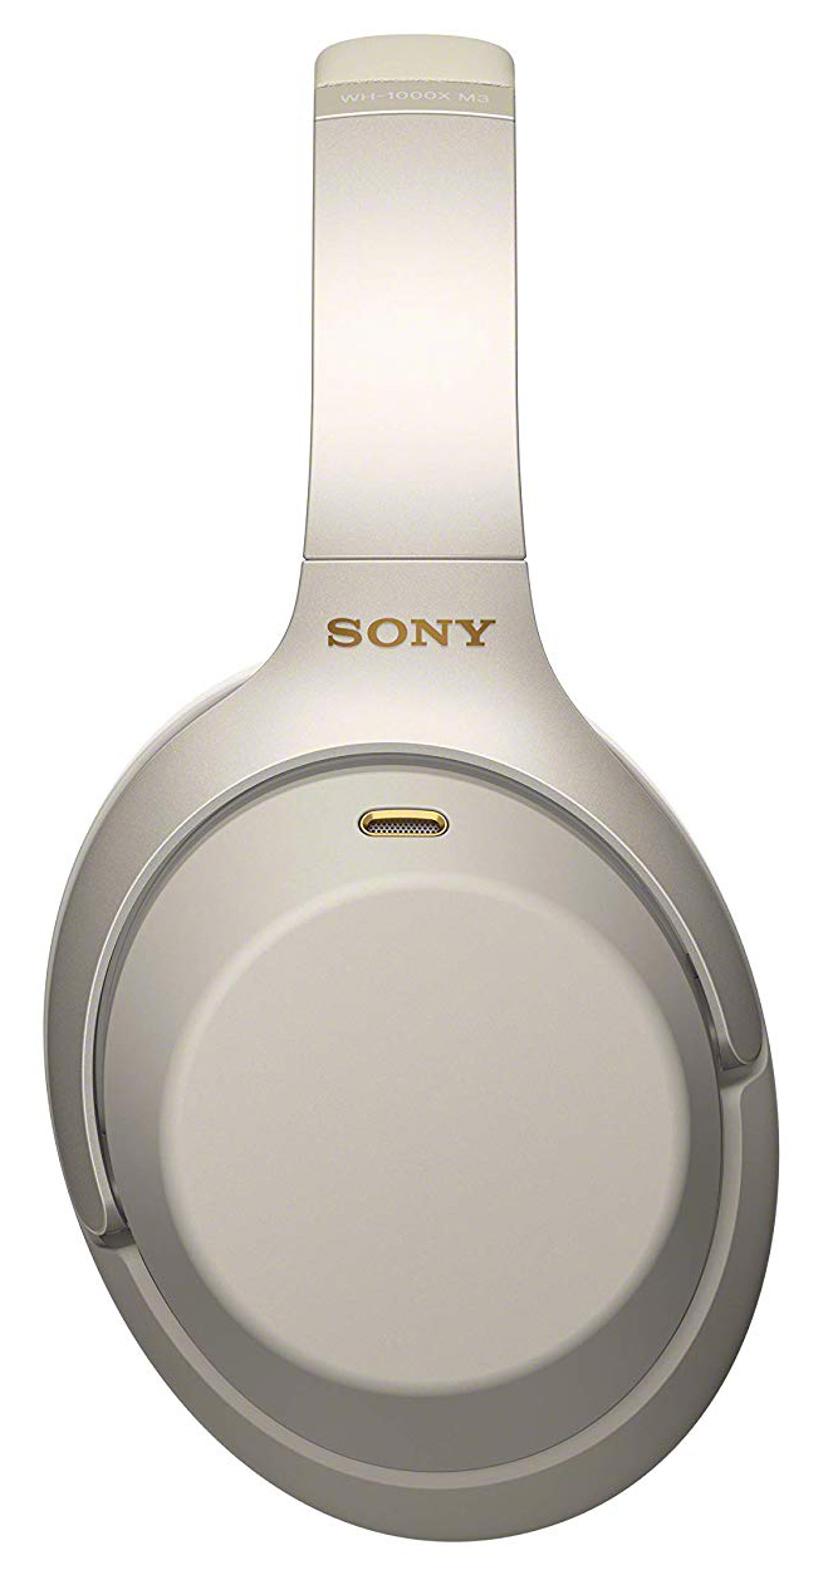 Sony WH-1000XM3 trådløse hodetelefoner med mikrofon Hodetelefoner 3,5 mm jakk Sølv